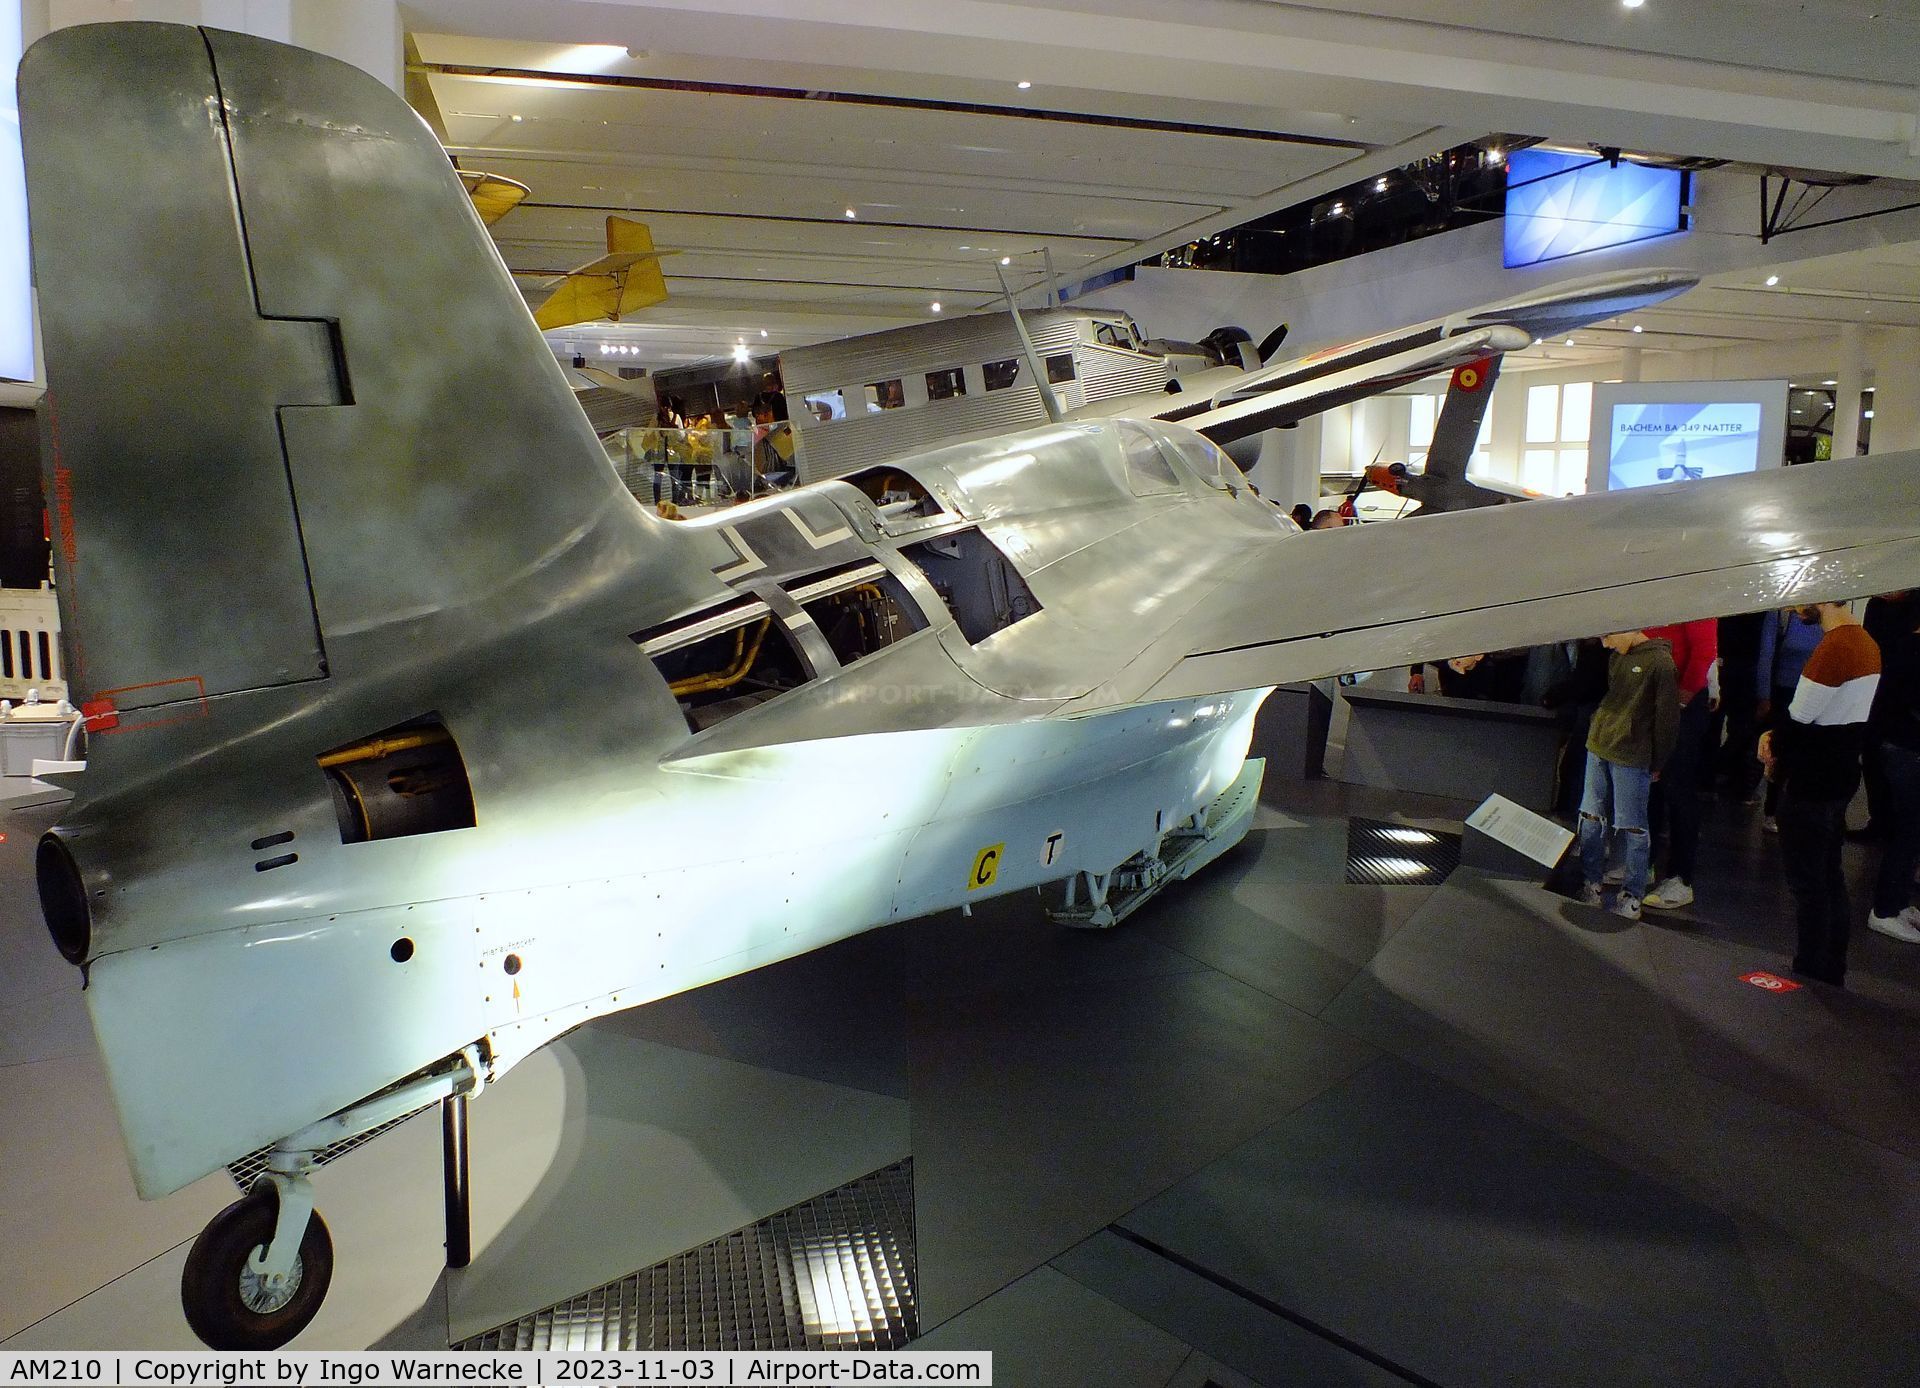 AM210, Messerschmitt Me-163B-1A Komet C/N 20370, Messerschmitt Me 163B-1A Komet at Deutsches Museum, München (Munich)